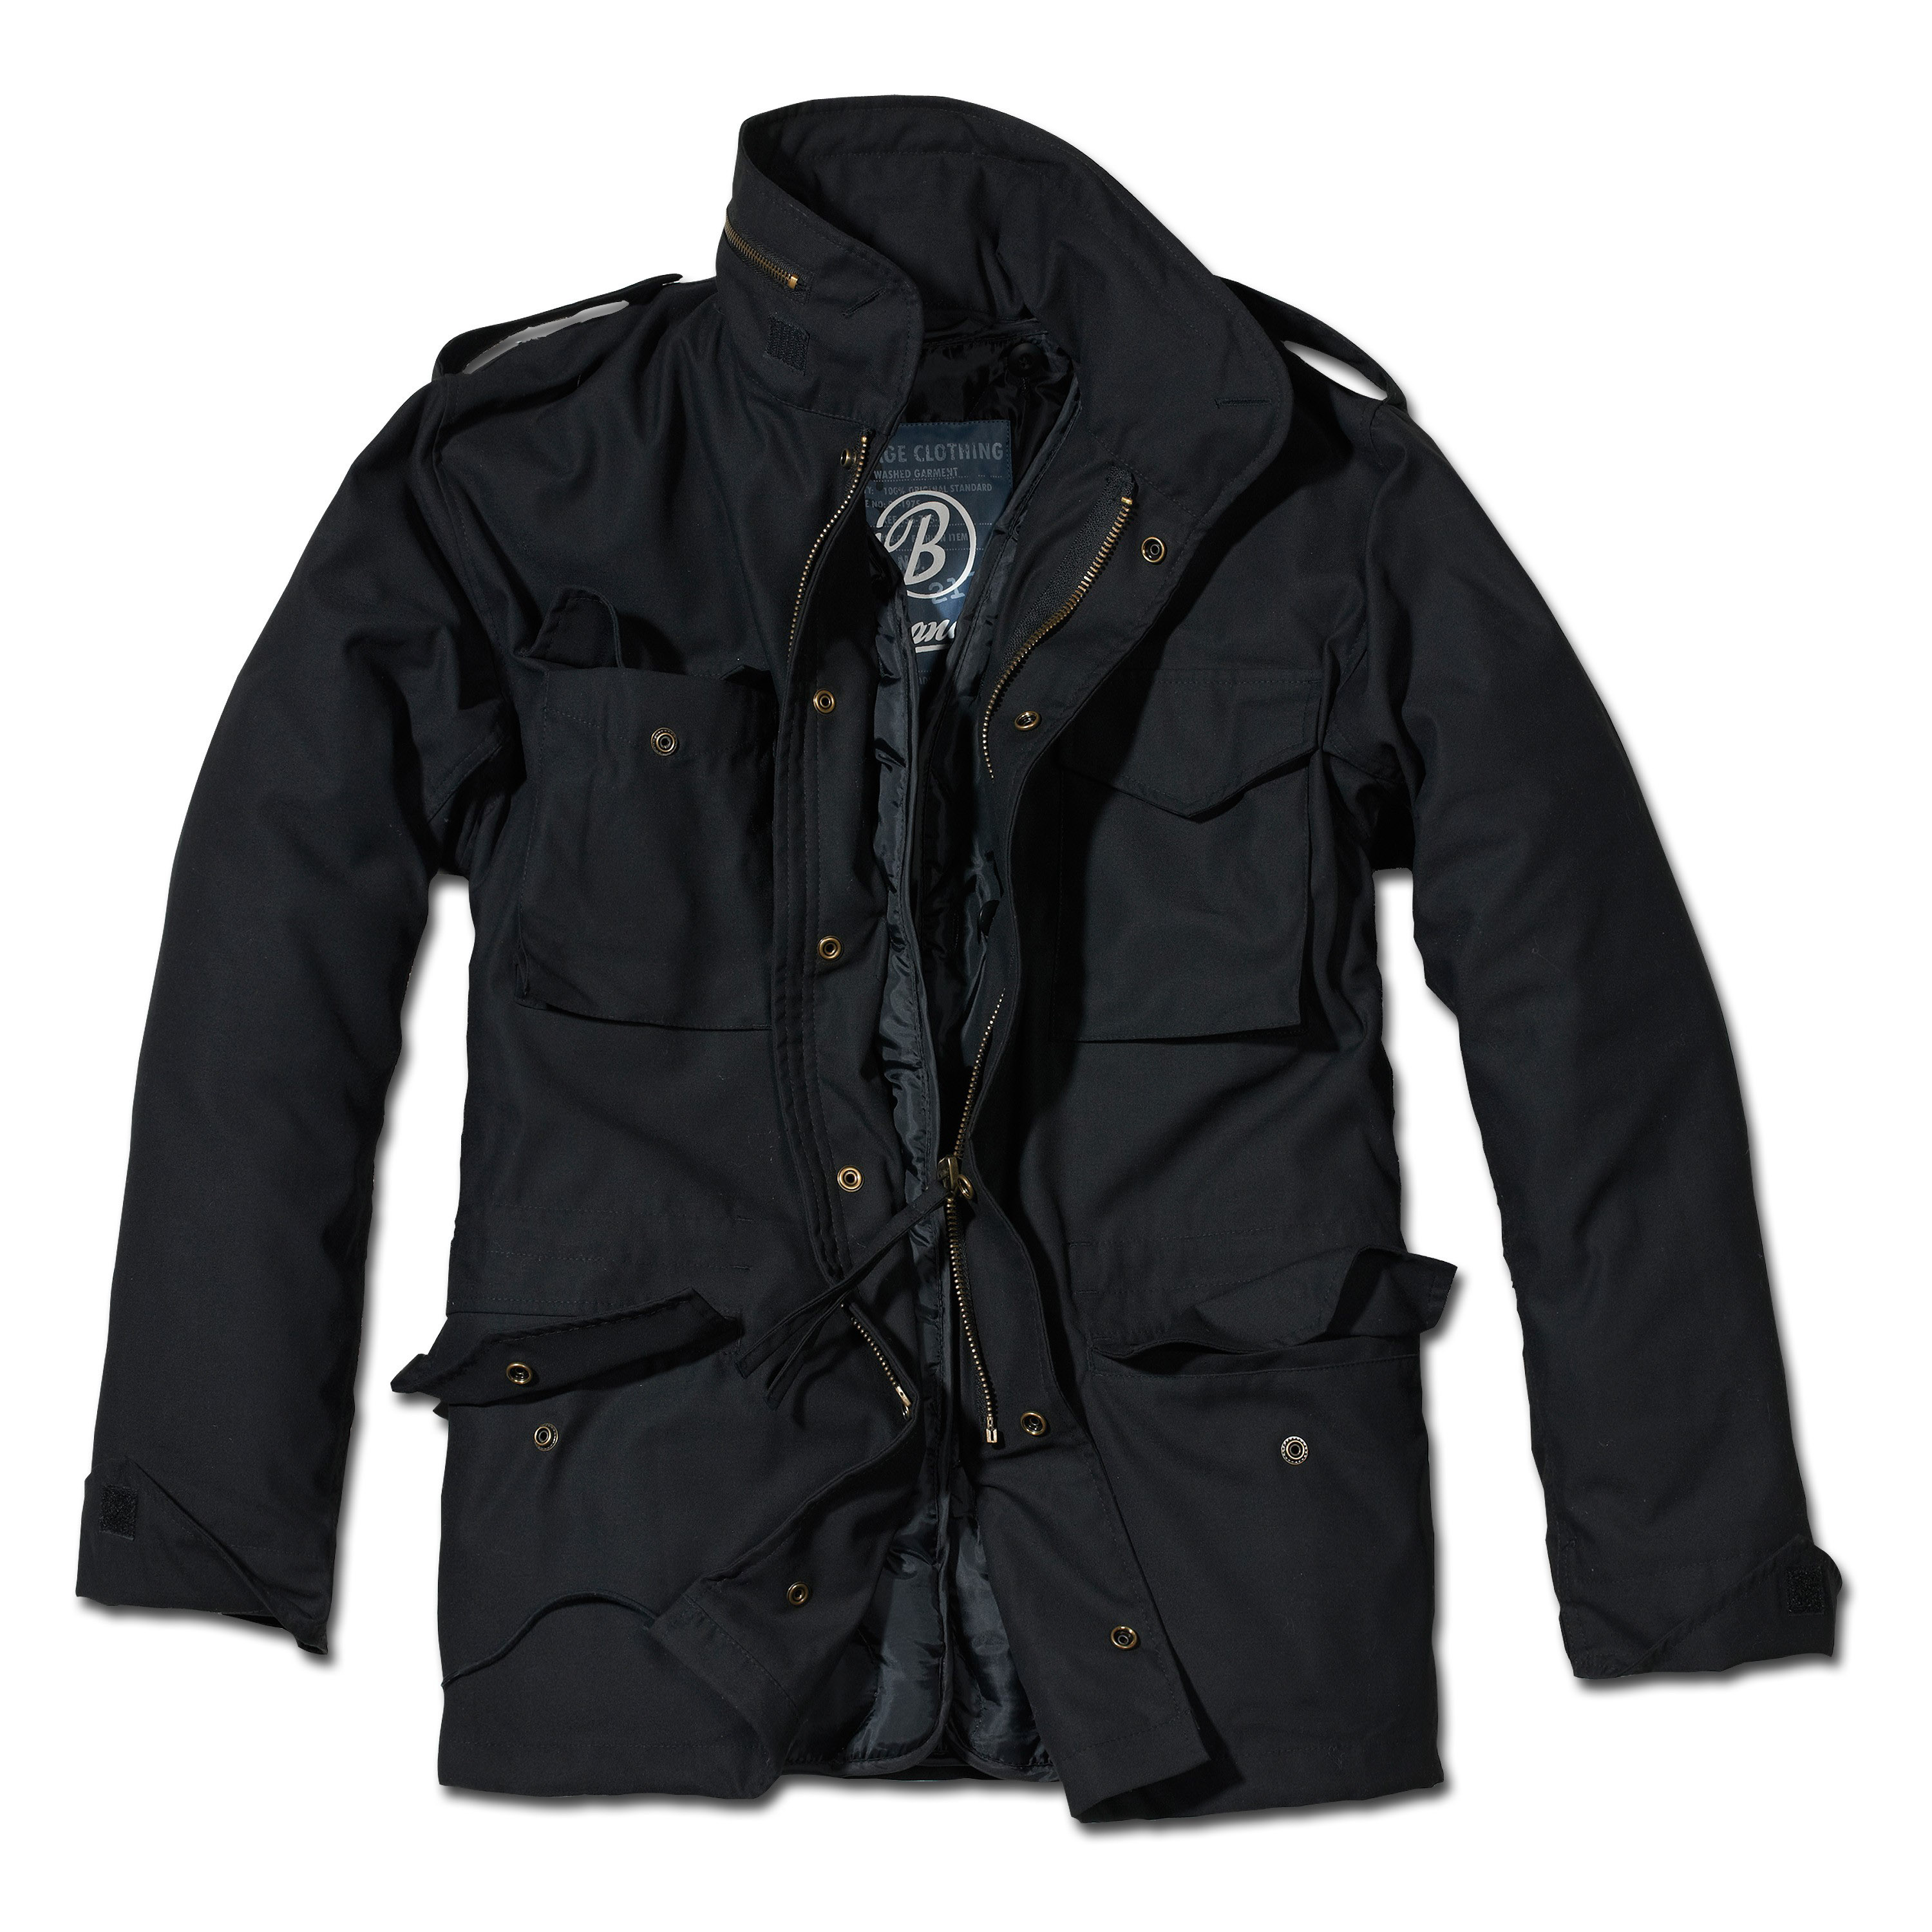 Куртка мужская черного цвета. Brandit m65. M65 Standard Brandit. Куртка m65 Standard Brandit Black. M-65 Classic Brandit.